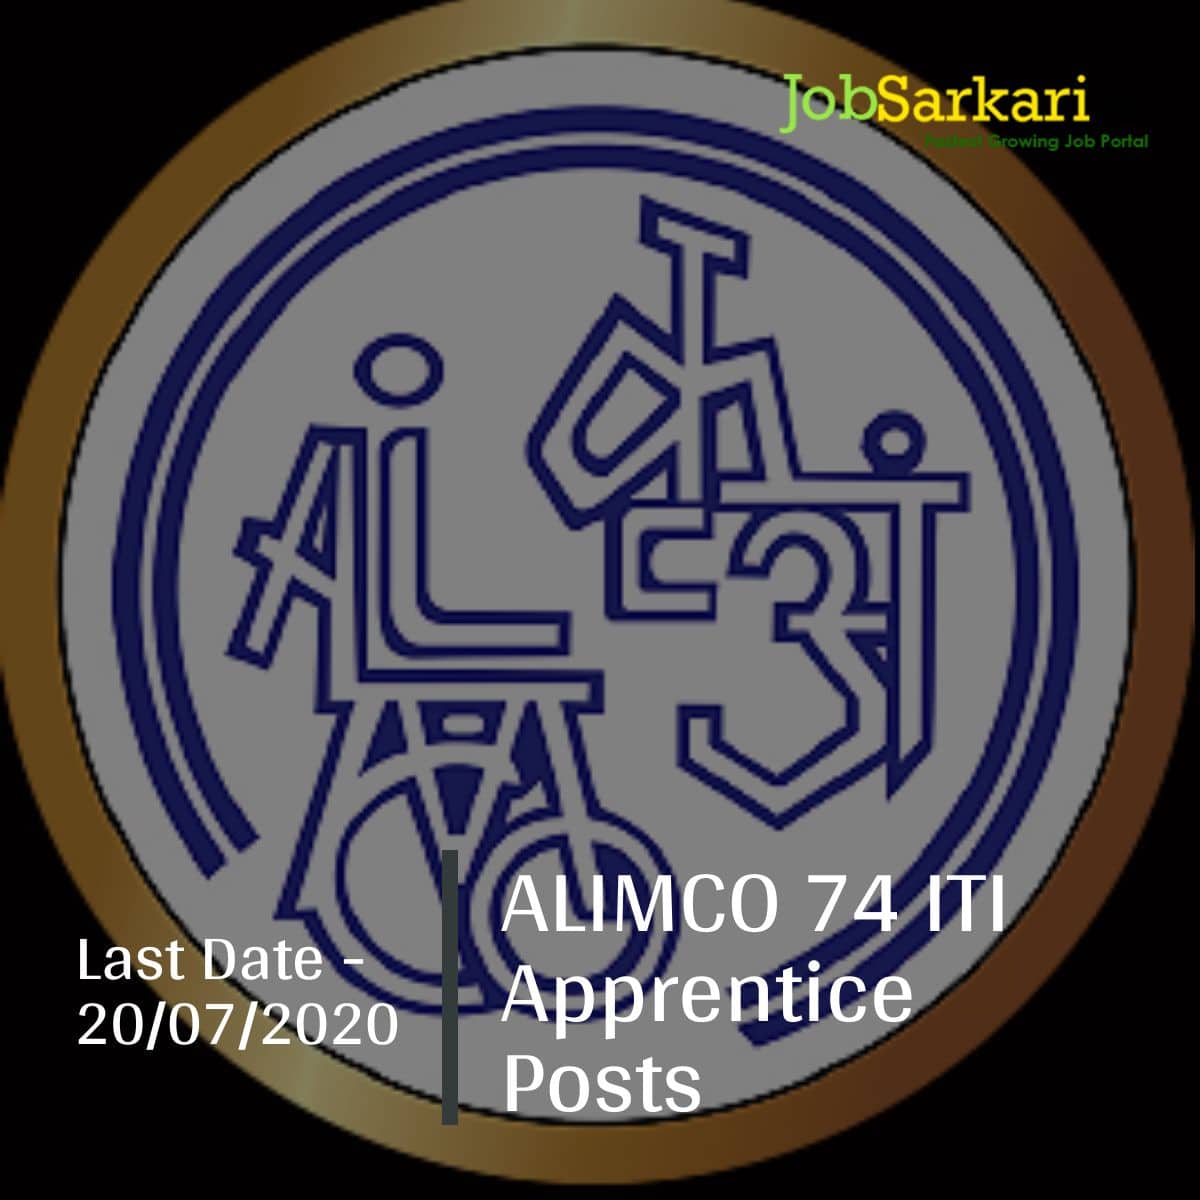 ALIMCO 74 ITI Apprentice Posts 18